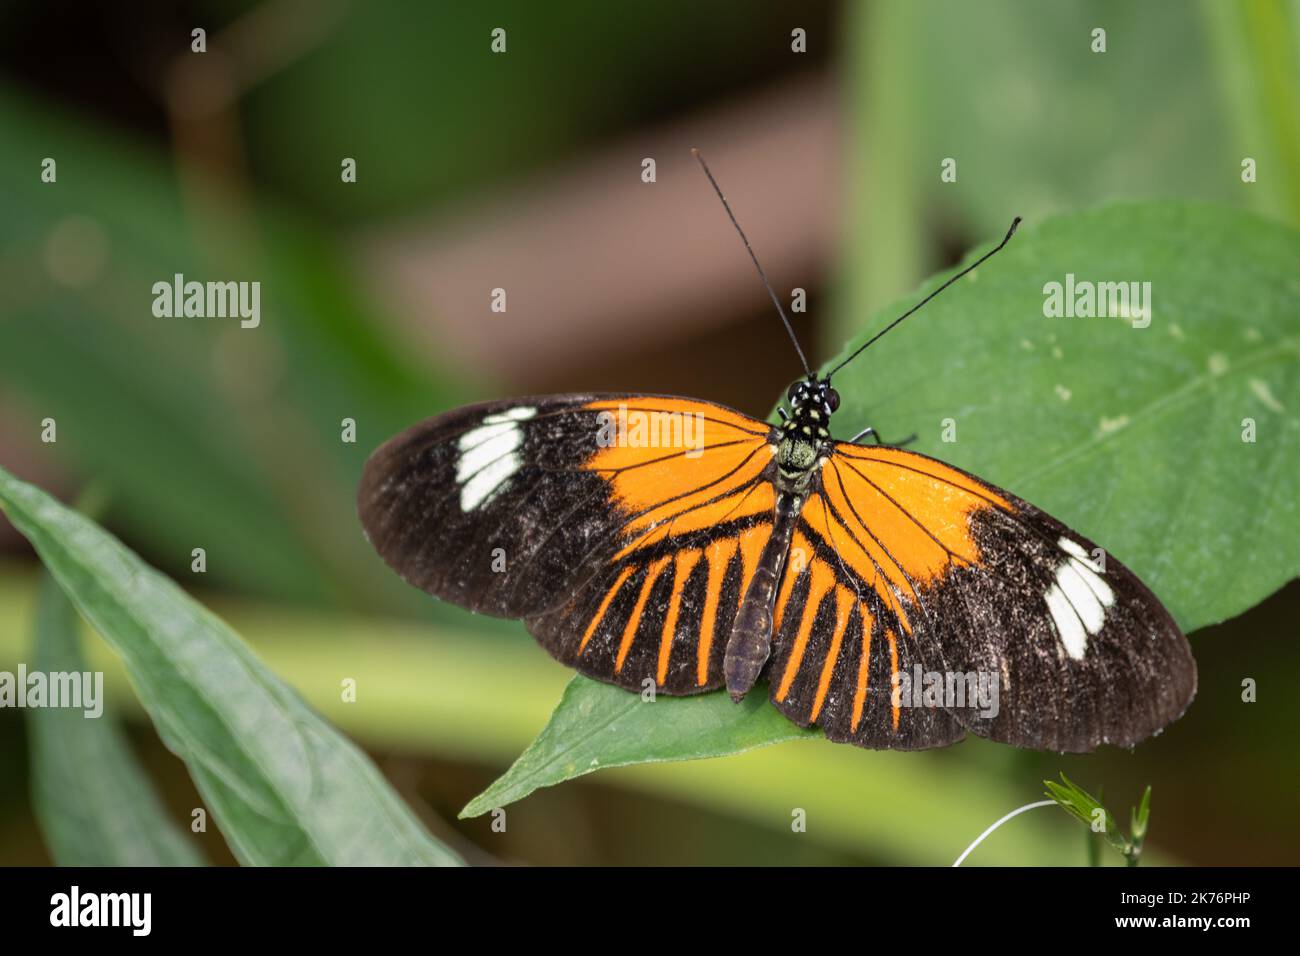 Farfalla su una foglia nei Paesi Bassi. Foto di alta qualità una bella farfalla. Foto Stock